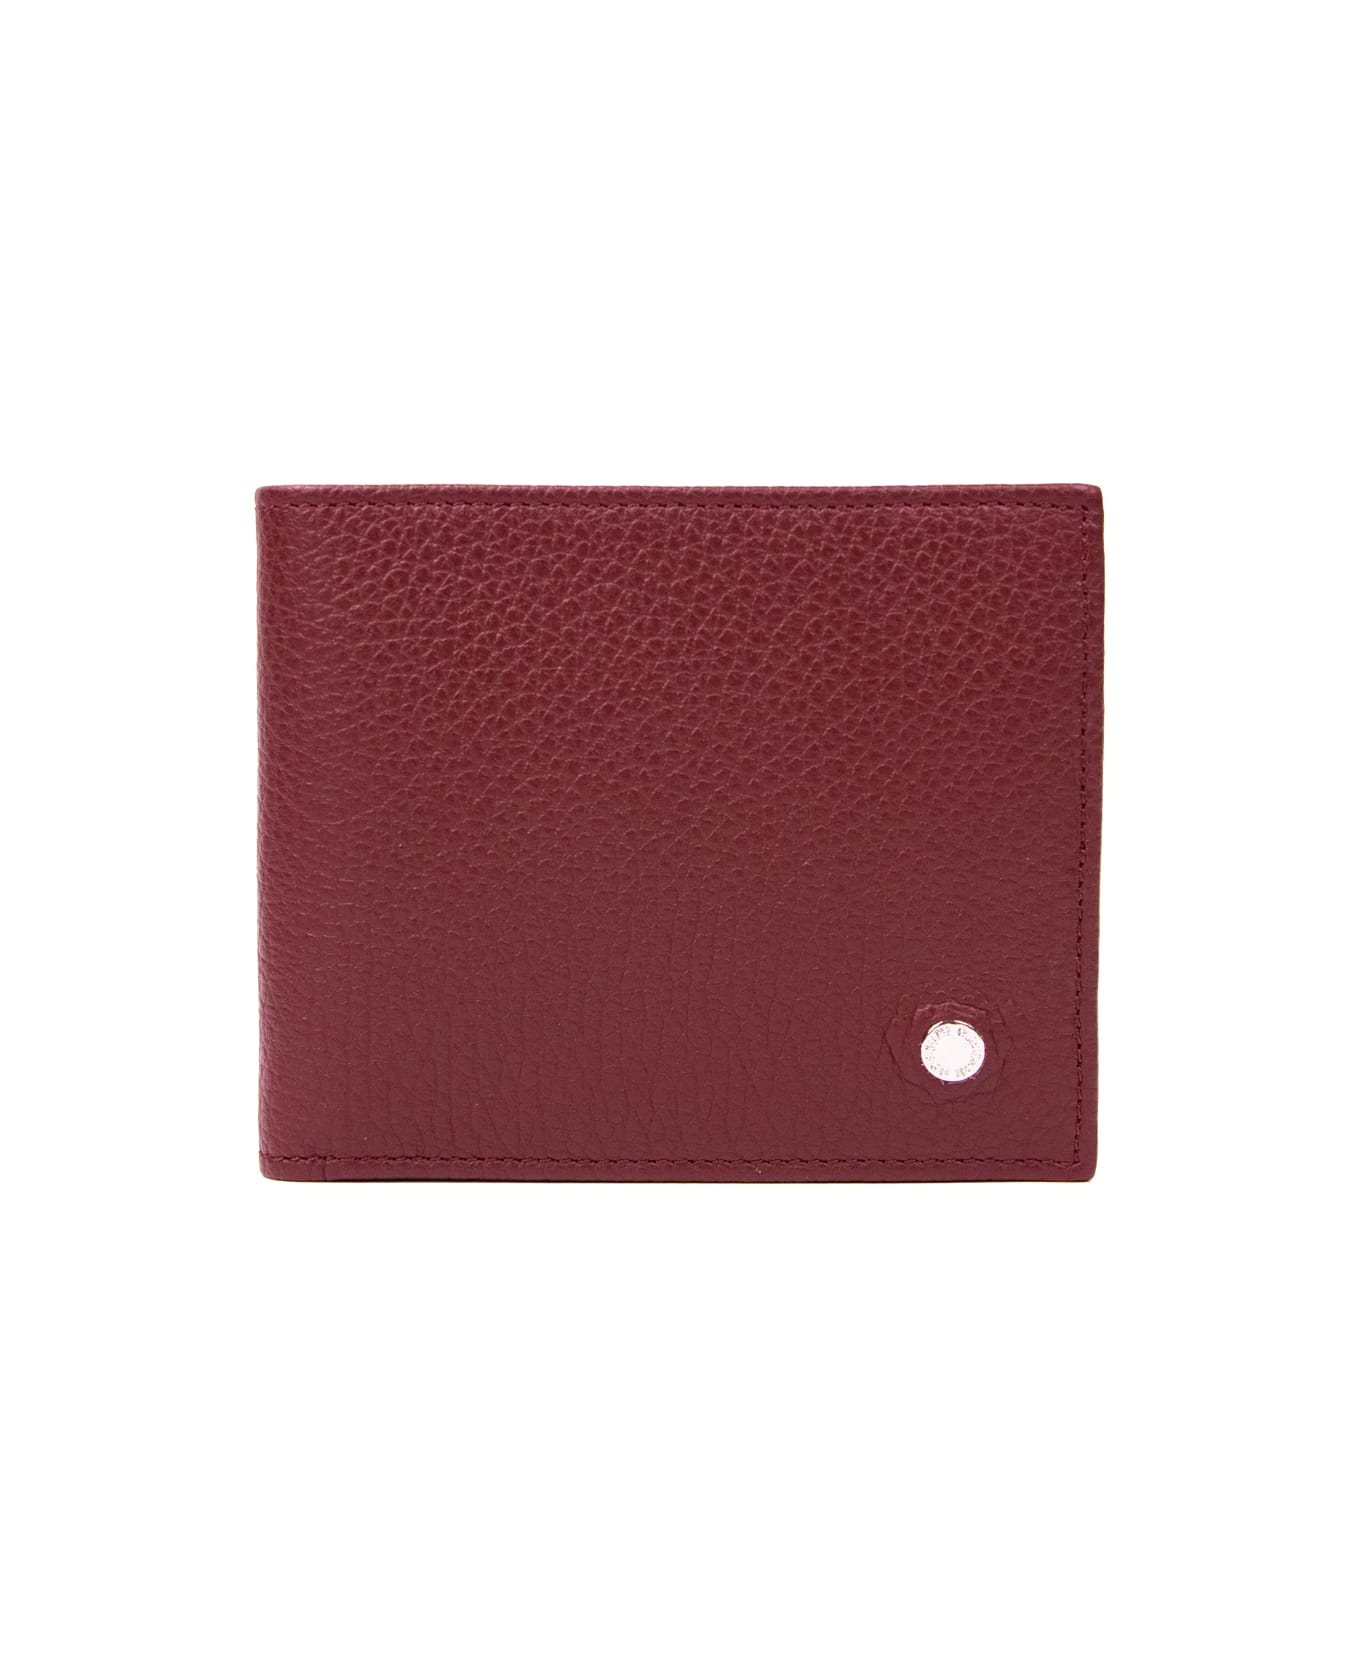 Orciani Leather Wallet - Bordeaux 財布